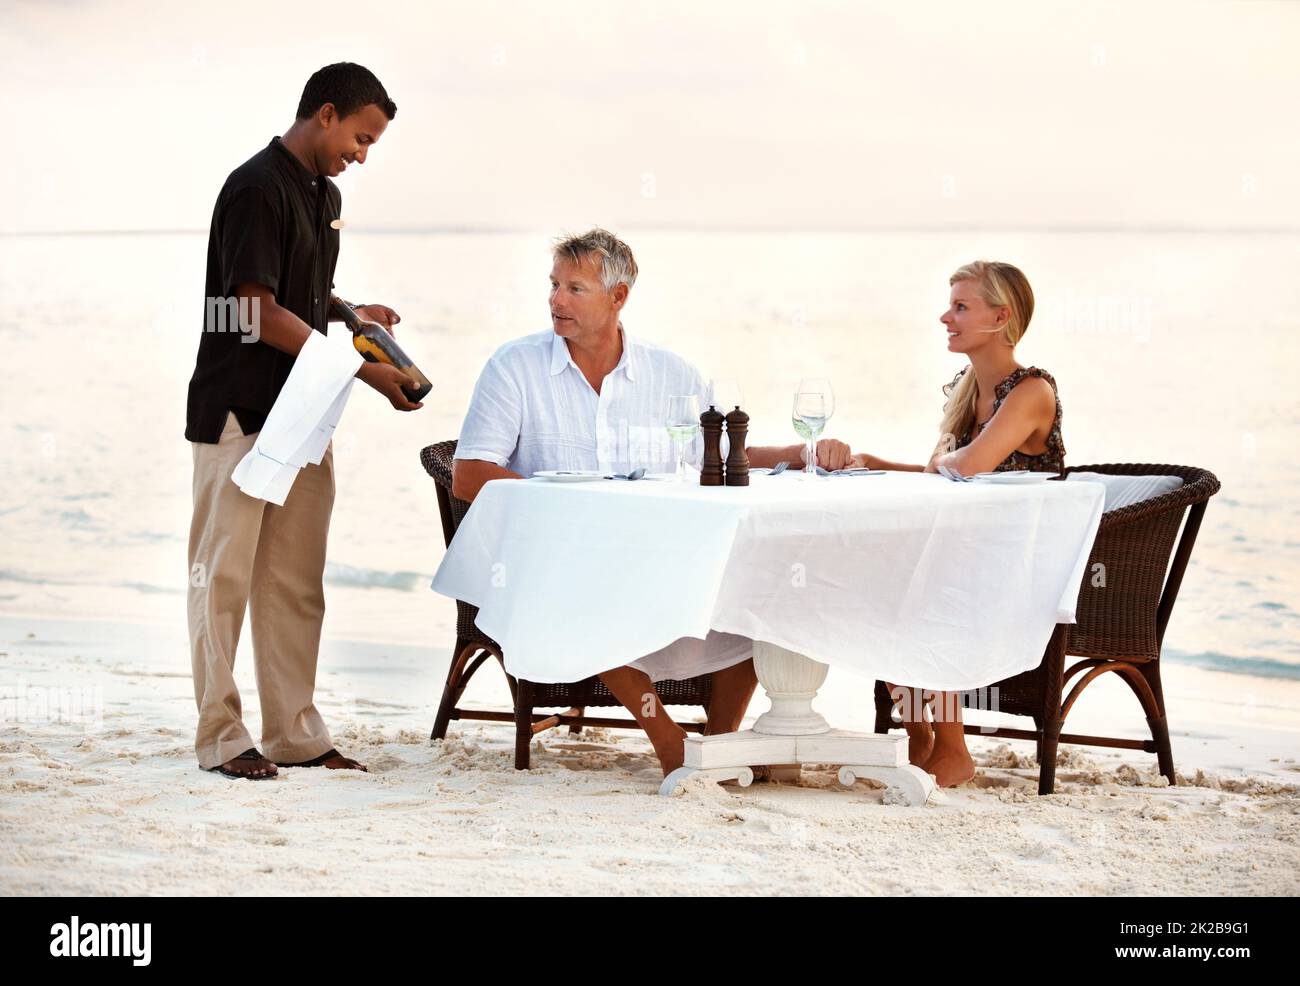 Pareja adulta cenando en la playa. Foto de una pareja adulta disfrutando de una cena romántica en la playa. Foto de stock